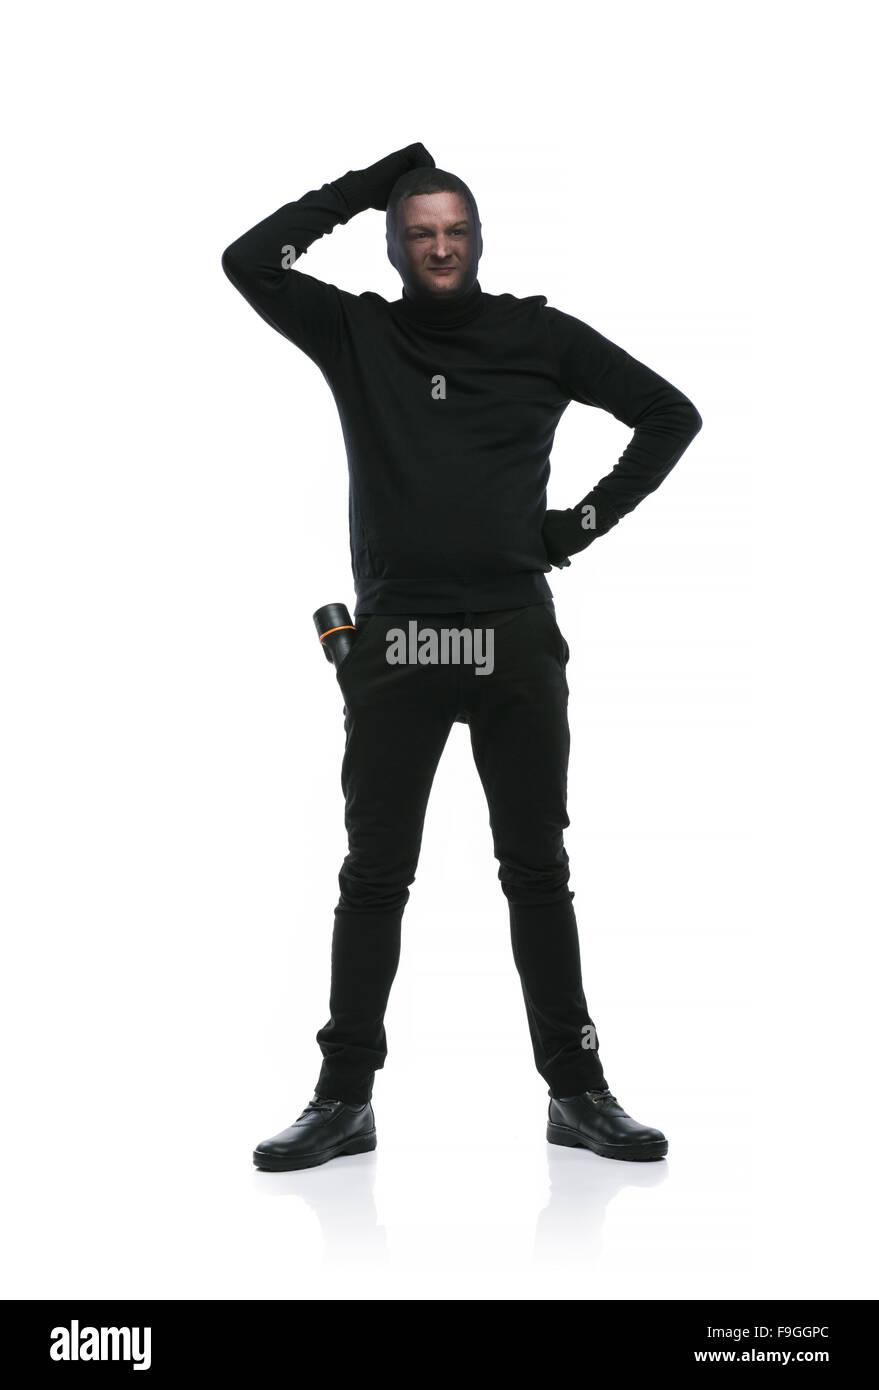 Ladro in azione con passamontagna sul suo volto, vestito di nero. Studio  shot su sfondo bianco Foto stock - Alamy